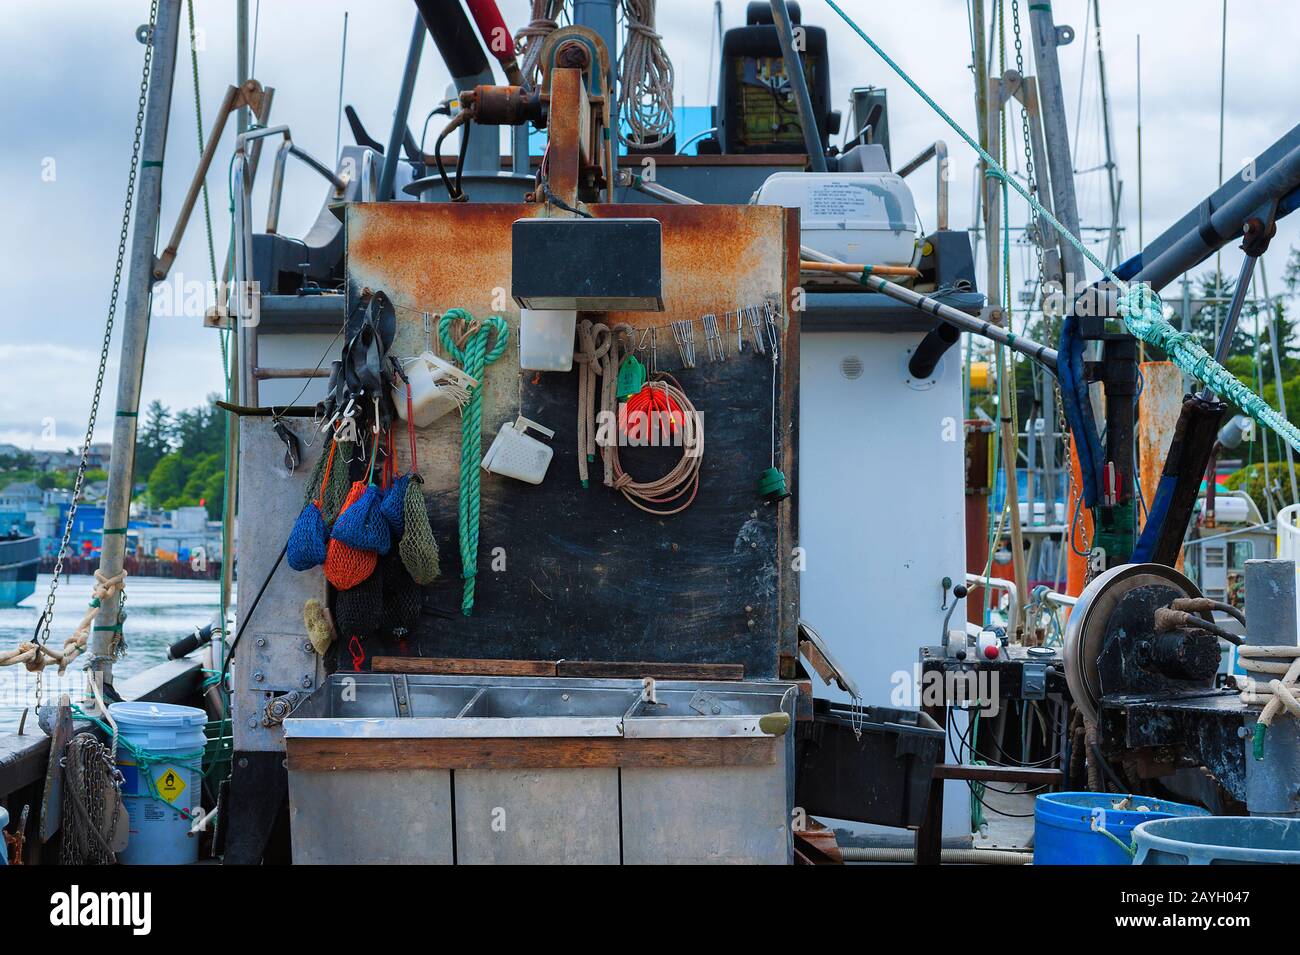 Newport, Oregon, USA - 25. Mai 2016: Nahaufnahme der Ausrüstung der Fischer auf dem Boot im Jachthafen in Newport, Oregon. Stockfoto